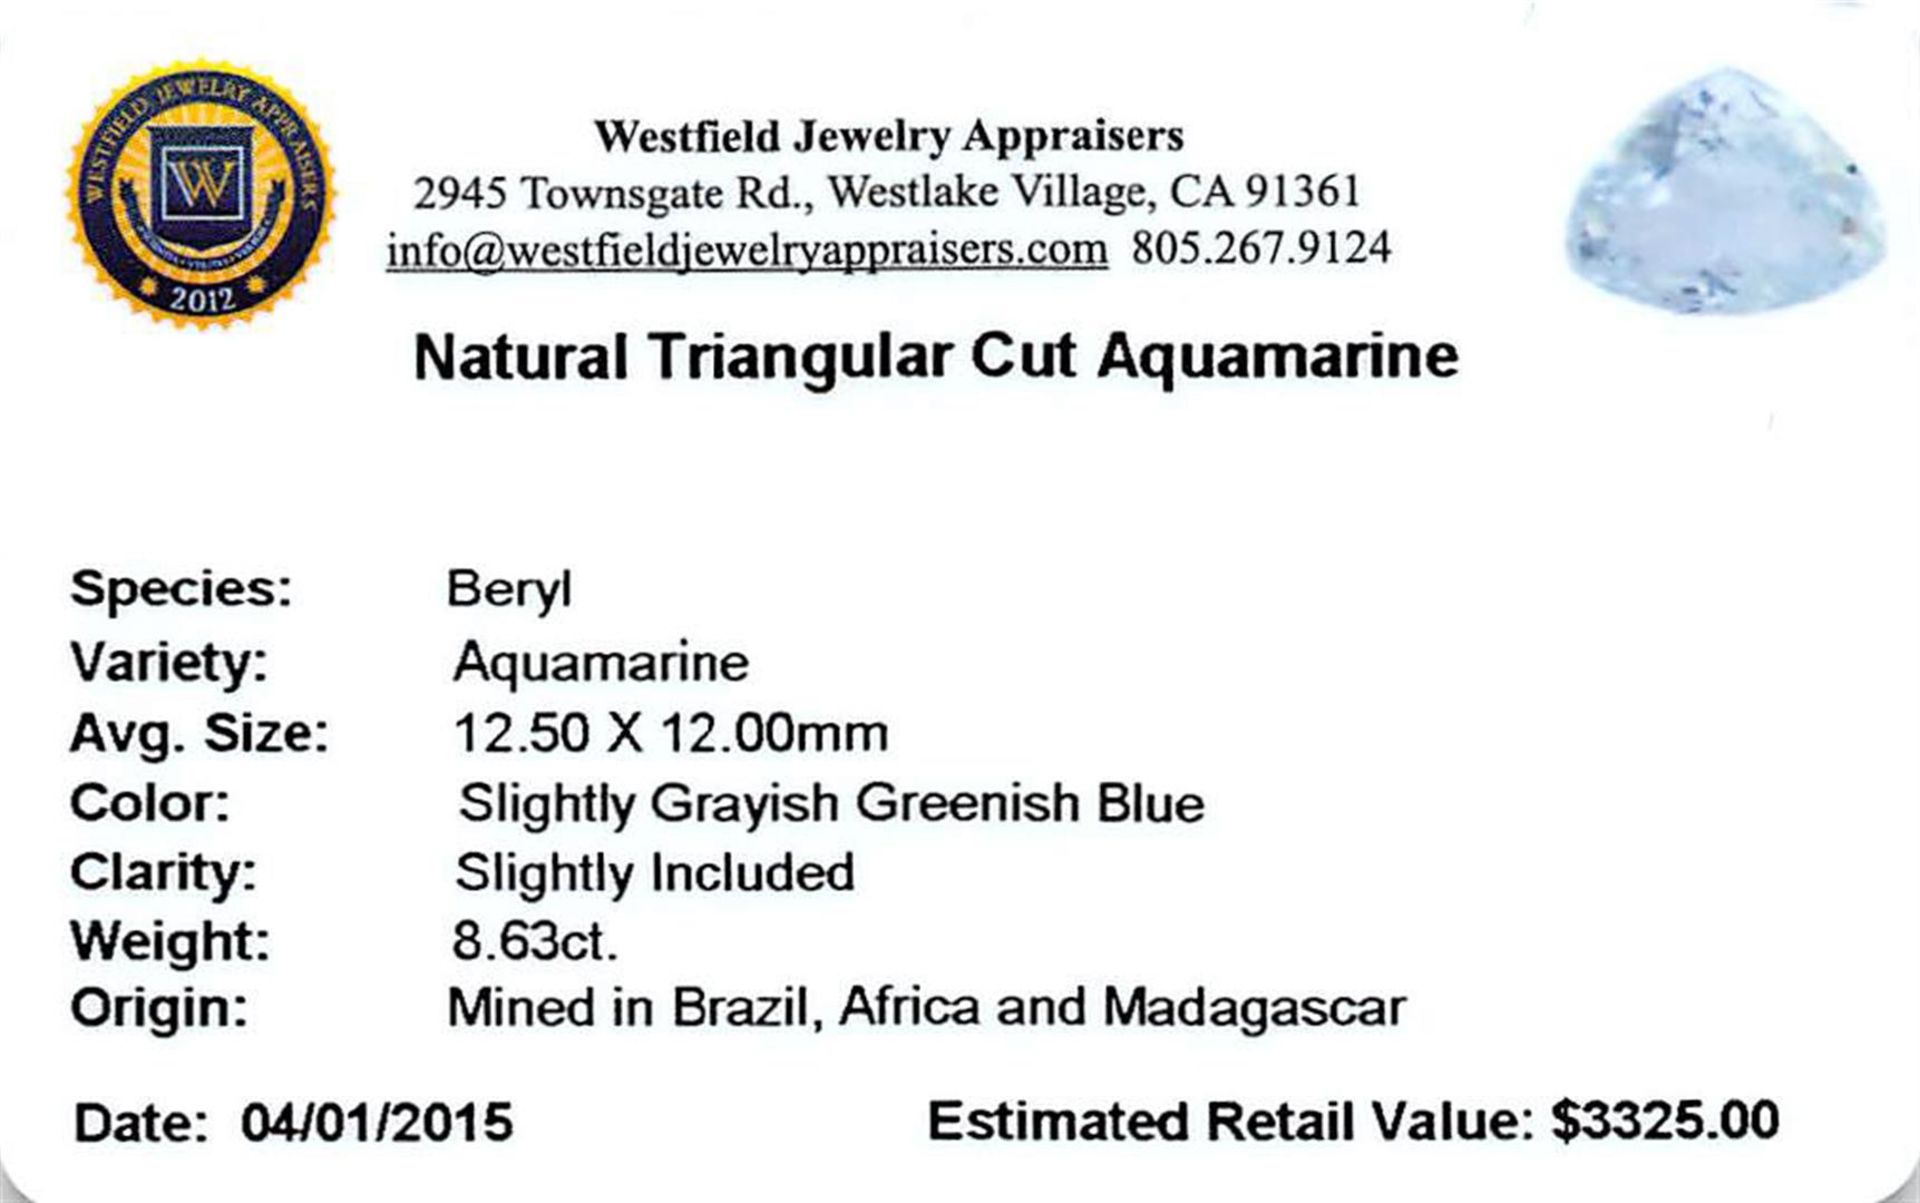 8.63 ctw Triangle Aquamarine Parcel - Image 2 of 2